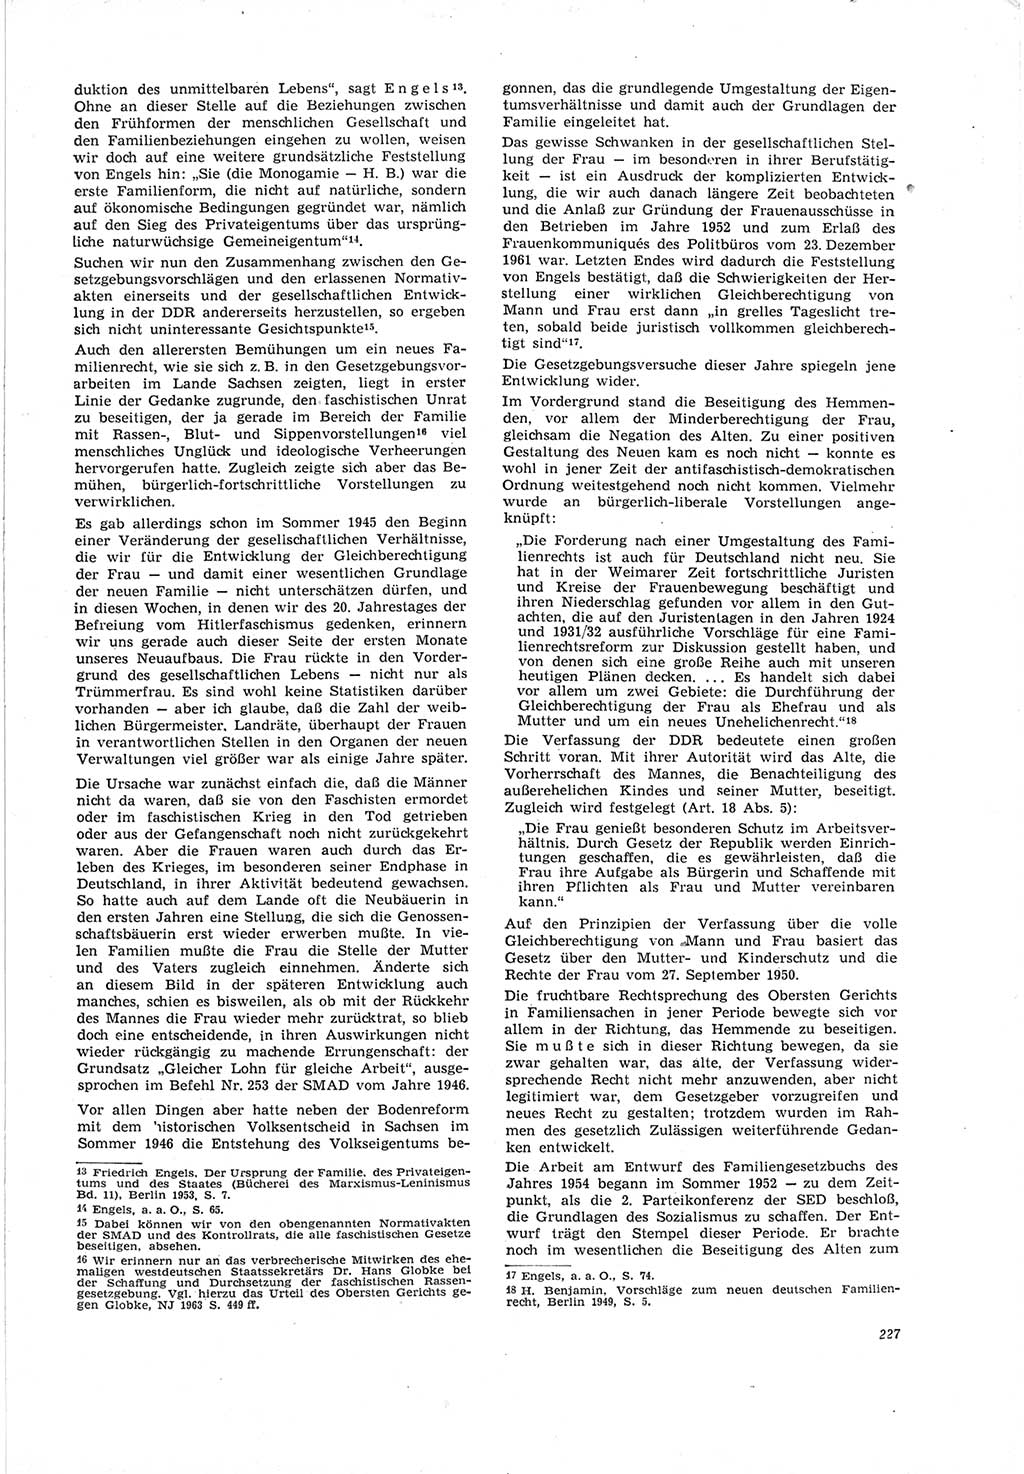 Neue Justiz (NJ), Zeitschrift für Recht und Rechtswissenschaft [Deutsche Demokratische Republik (DDR)], 19. Jahrgang 1965, Seite 227 (NJ DDR 1965, S. 227)